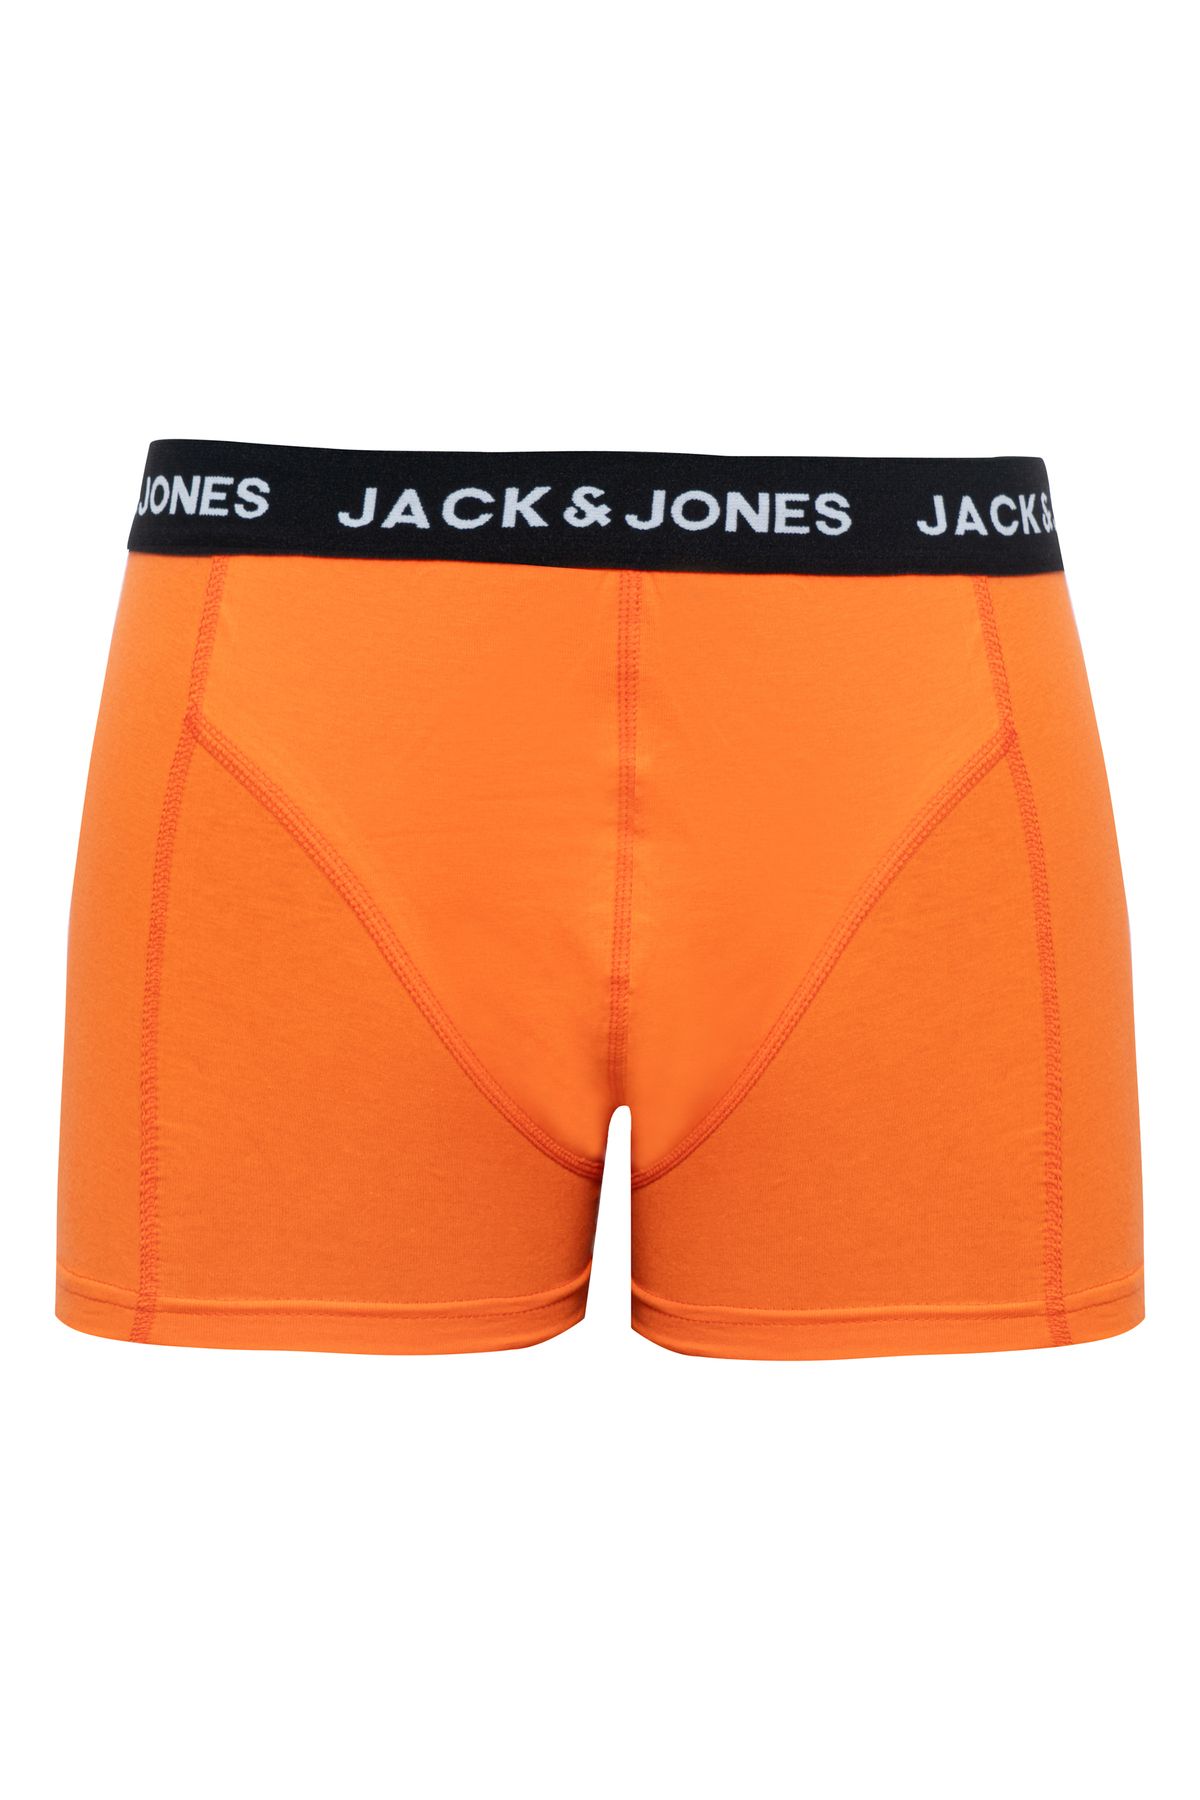 Jack & Jones Logolu Elastik Bel Yapili Tekli Boxer - Solid